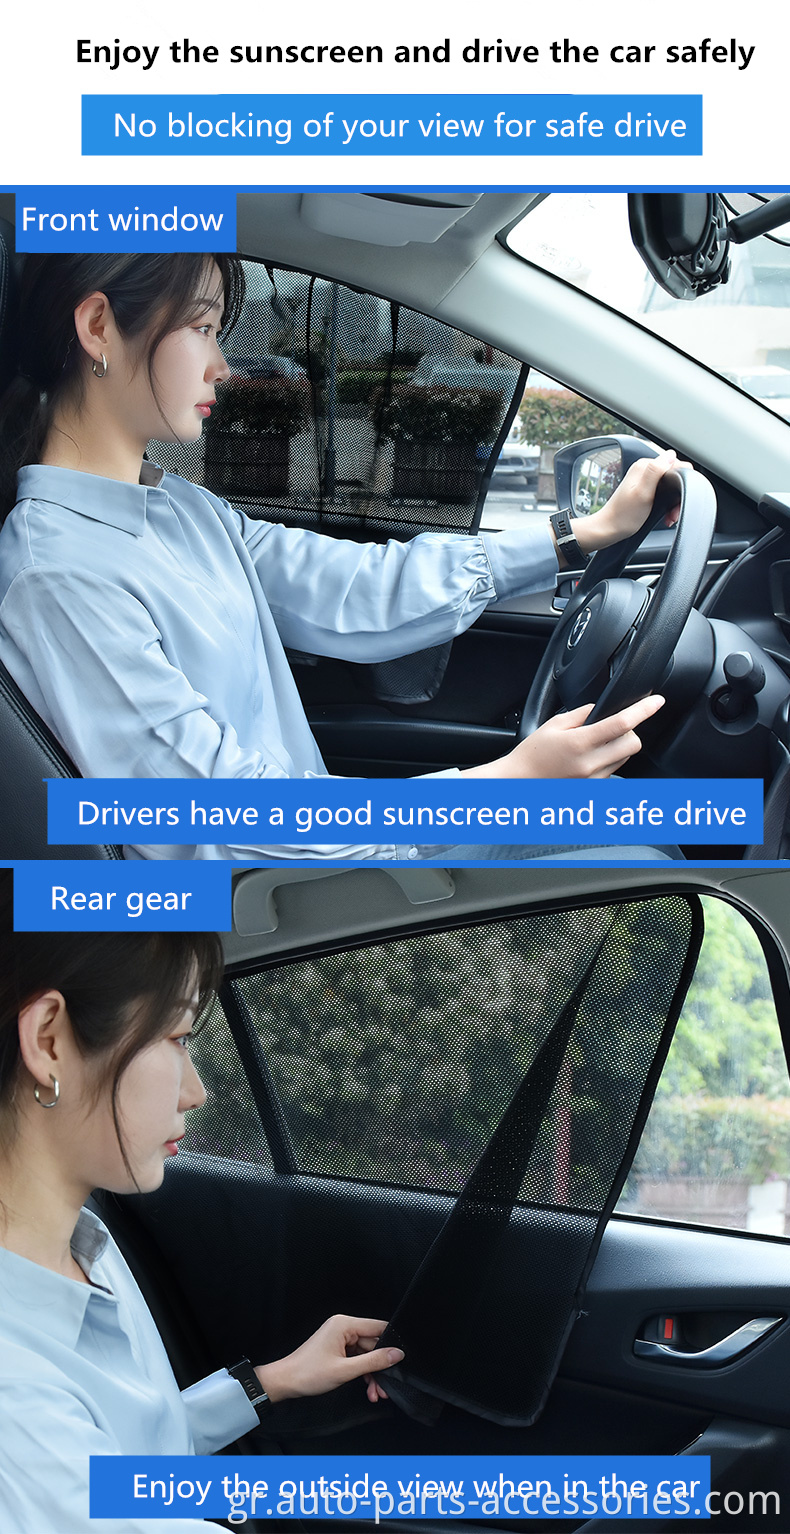 Καλοκαίρι UV Προστασία λέιζερ Πλευρικό παράθυρο Αντι-Μοσκίττο 5D Μαγνητικό Μαγνητικό Αναδιπλούμενο Αυτοκίνητο Κουρτίνα Αυτοκίνητων Αυτοκινήτων